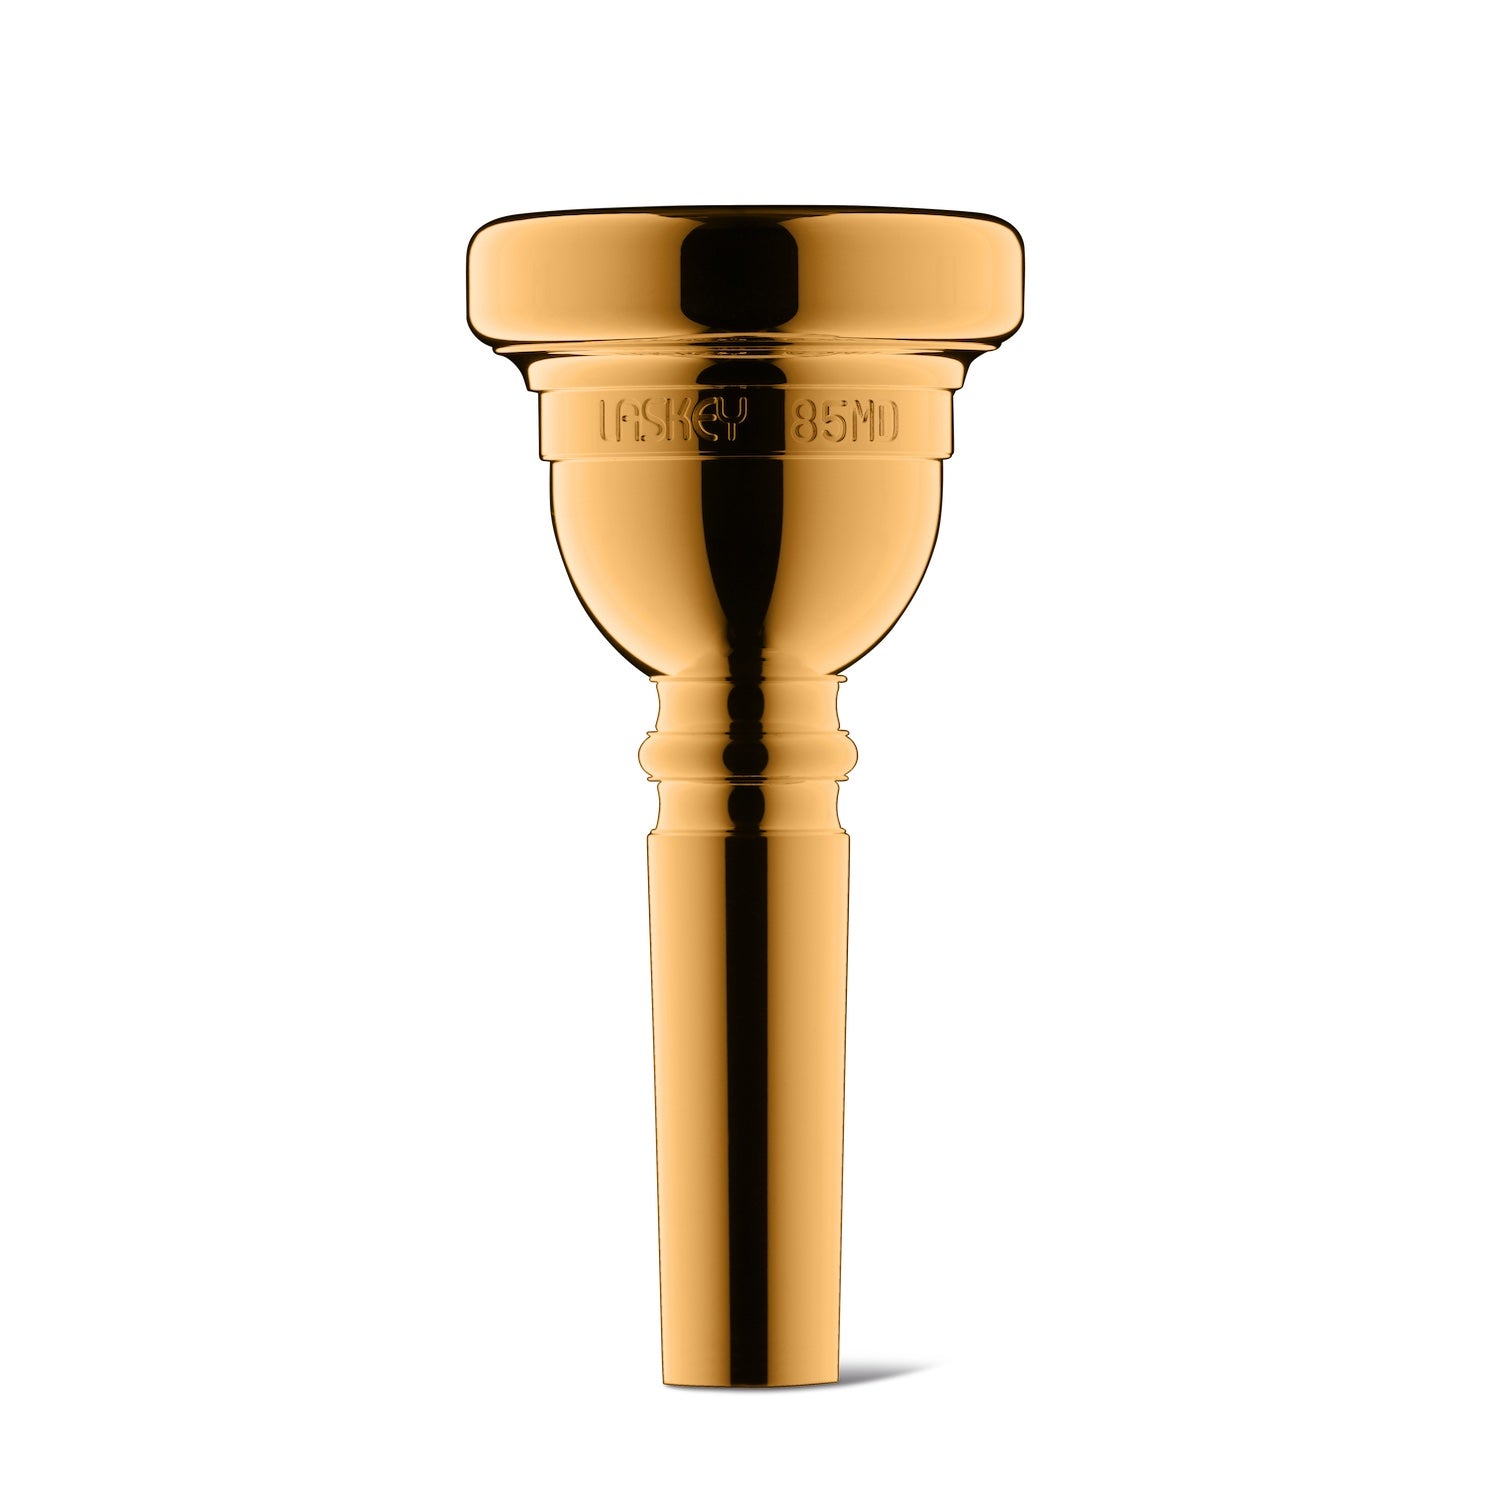 https://www.laskey.com/cdn/shop/files/laskey-bass-trombone-mouthpiece-85MD-gold_1500x.jpg?v=1690908873